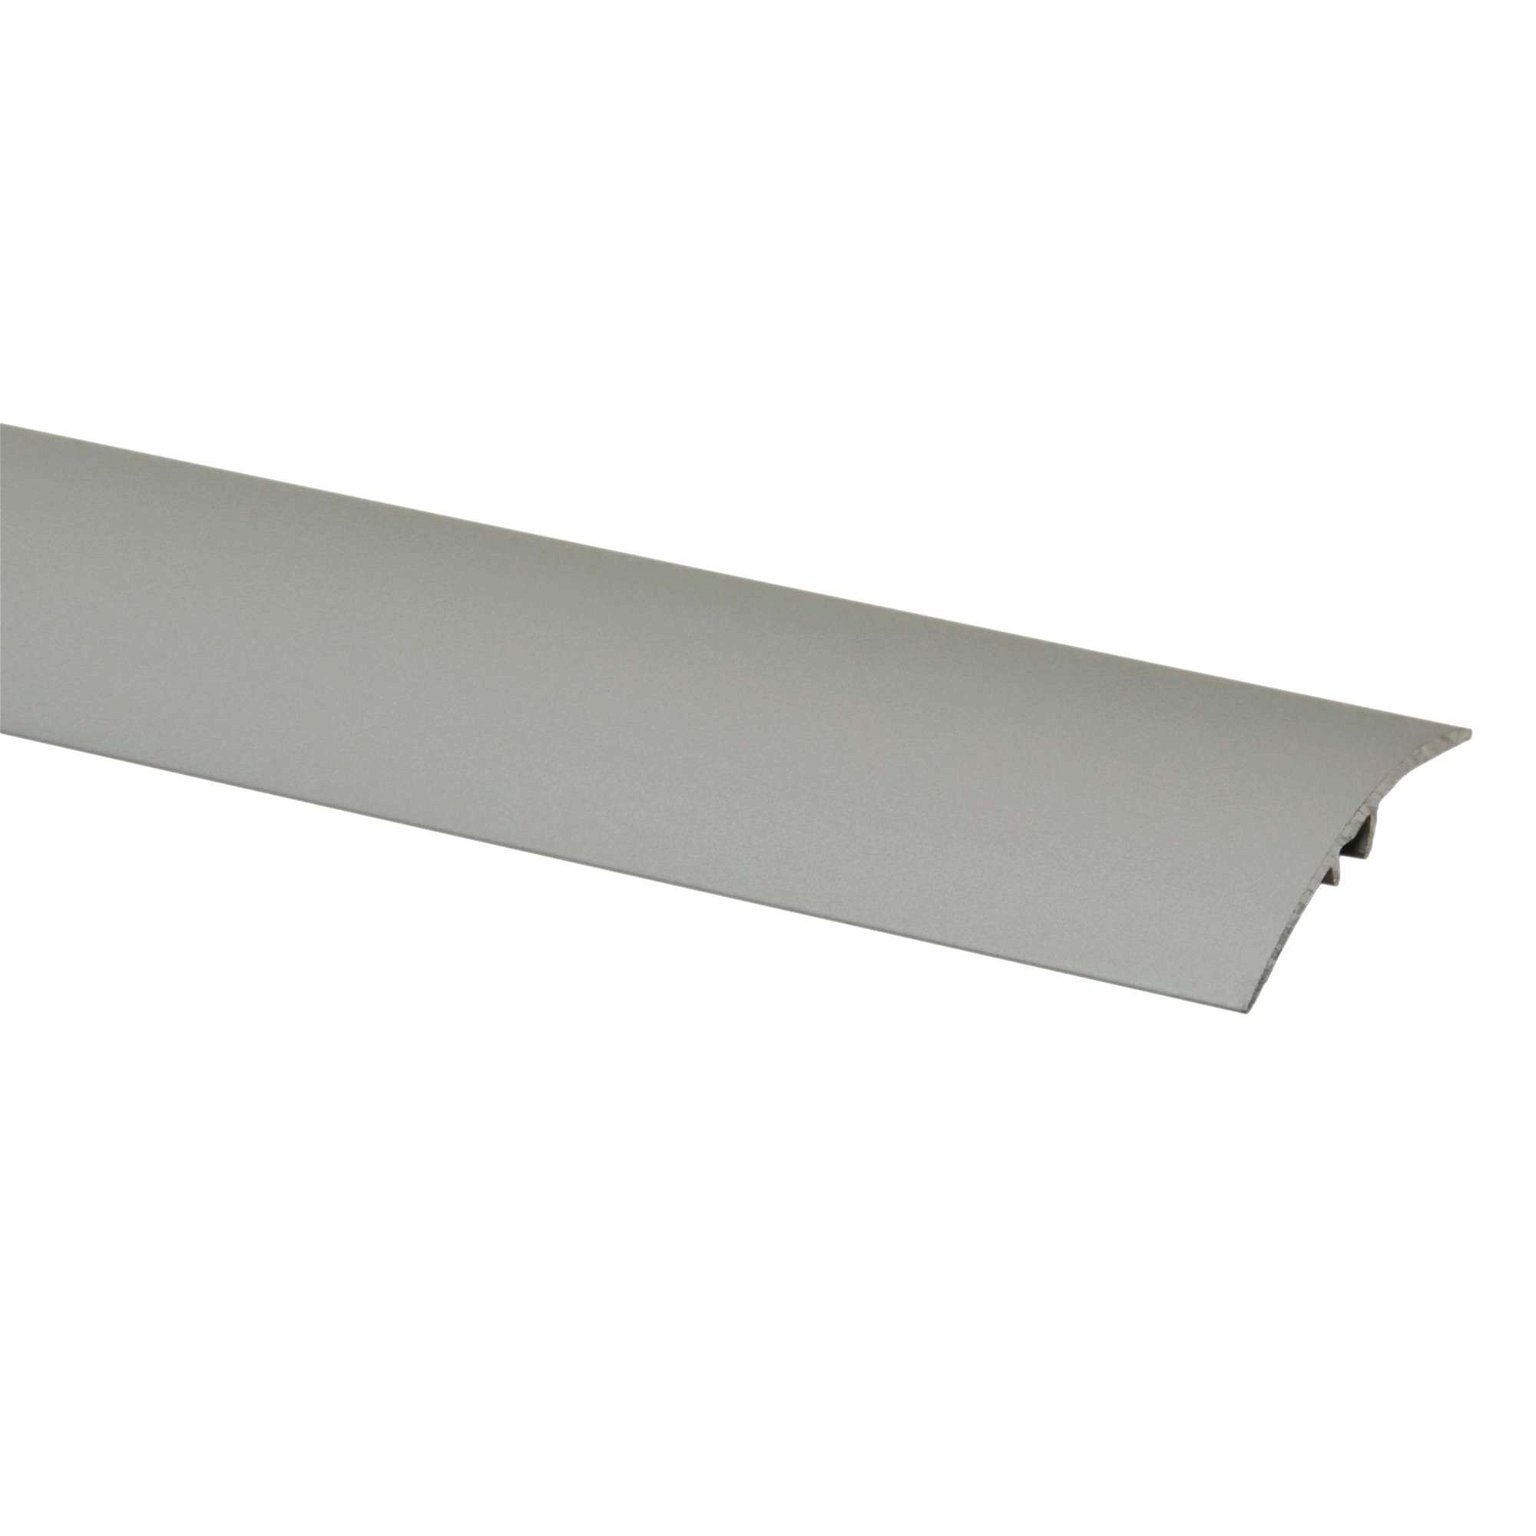 Aliumininė grindų juostelė SM2 A1, sidabro sp., 41 mm pločio, 93 cm ilgio